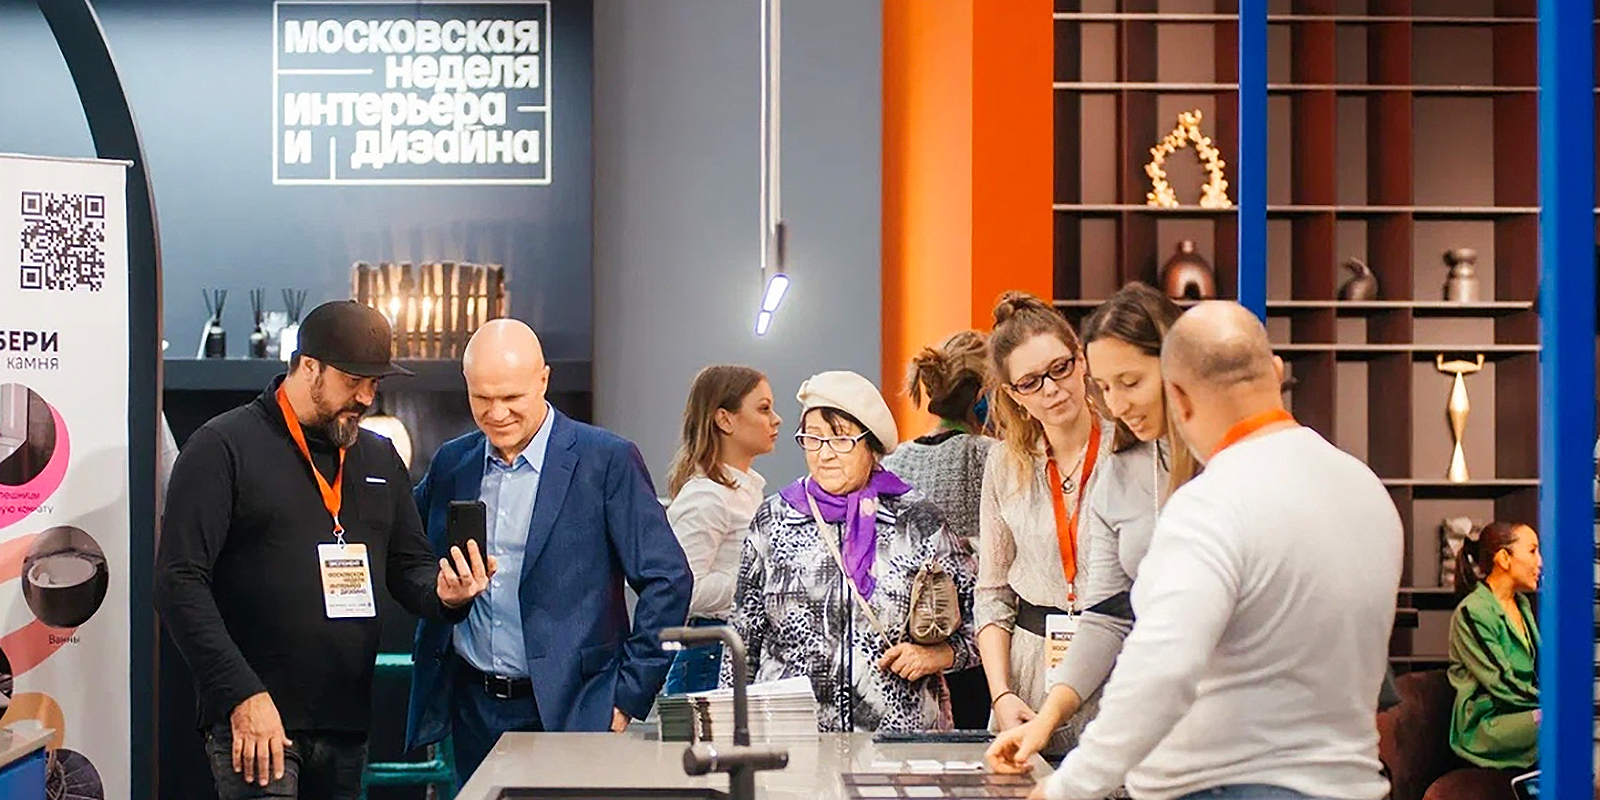 Более 200 тысяч посетителей: как прошла первая Московская неделя интерьера и дизайна